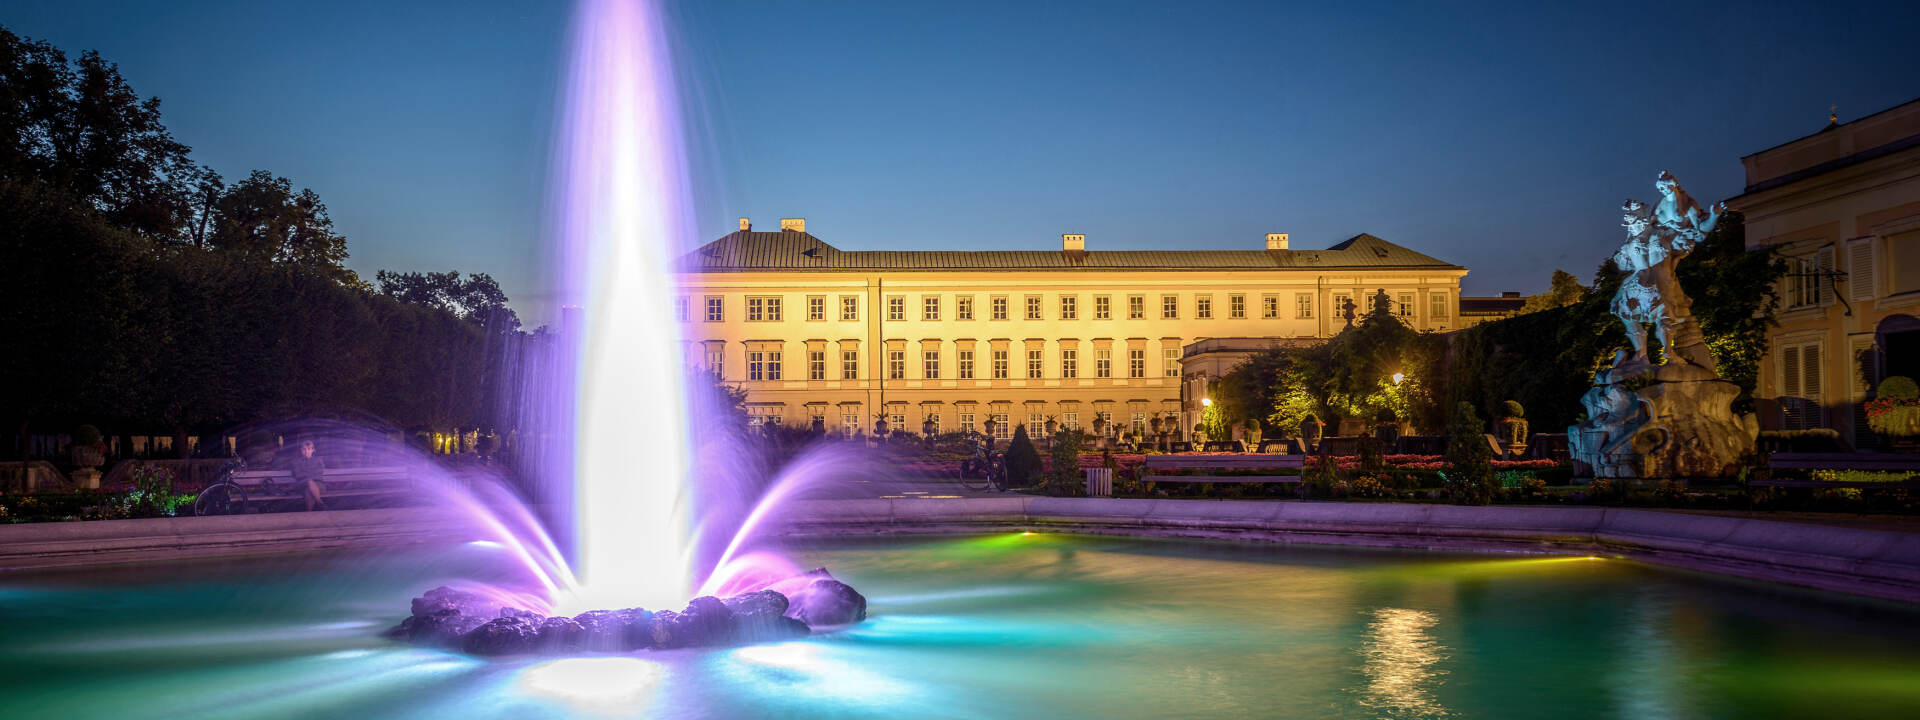 Mirabell Palace at night © Tourismus Salzburg GmbH